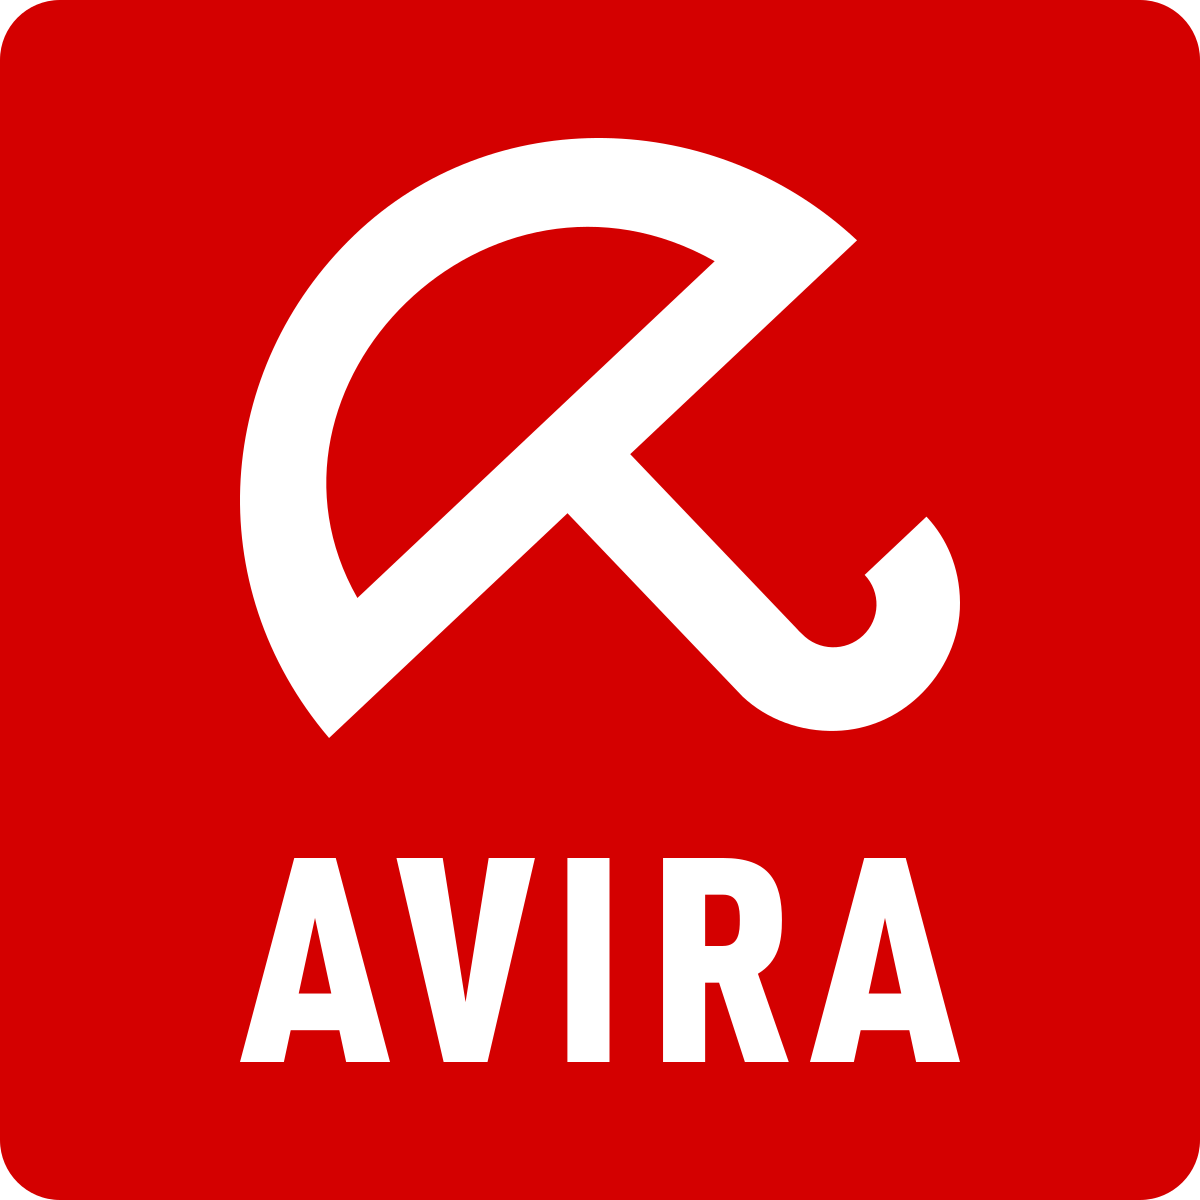 download free avira antivirus program